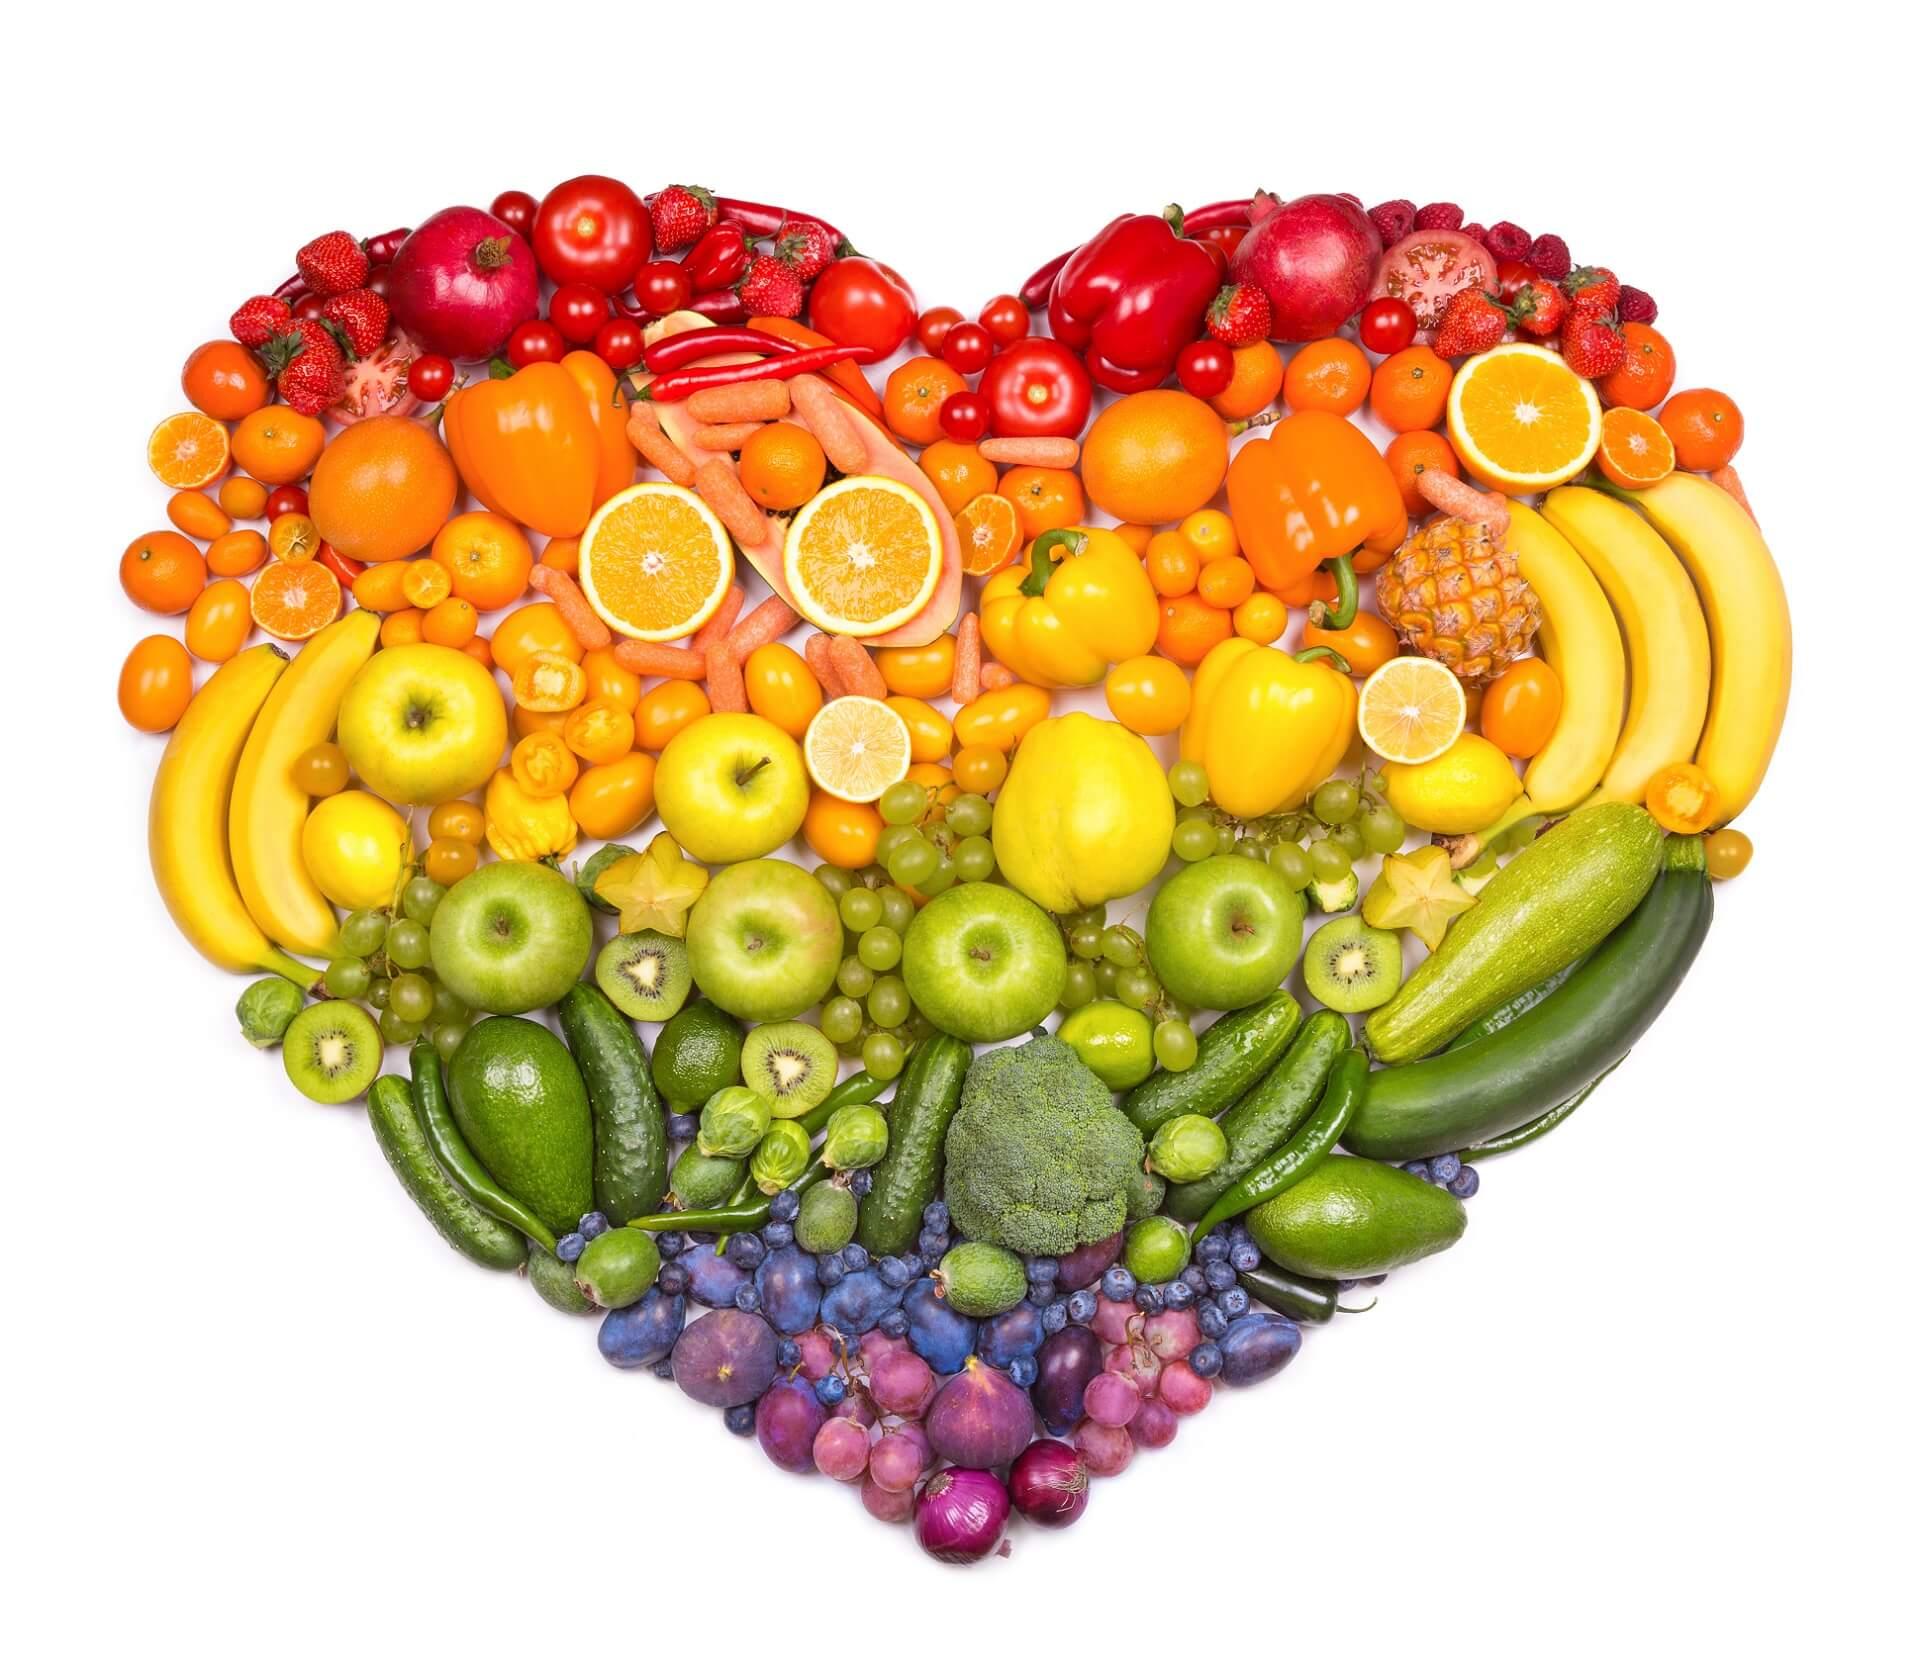 Comer Frutas Y Verduras Con Seguridad Rincón De La Salud De Fraternidad Muprespa 5159